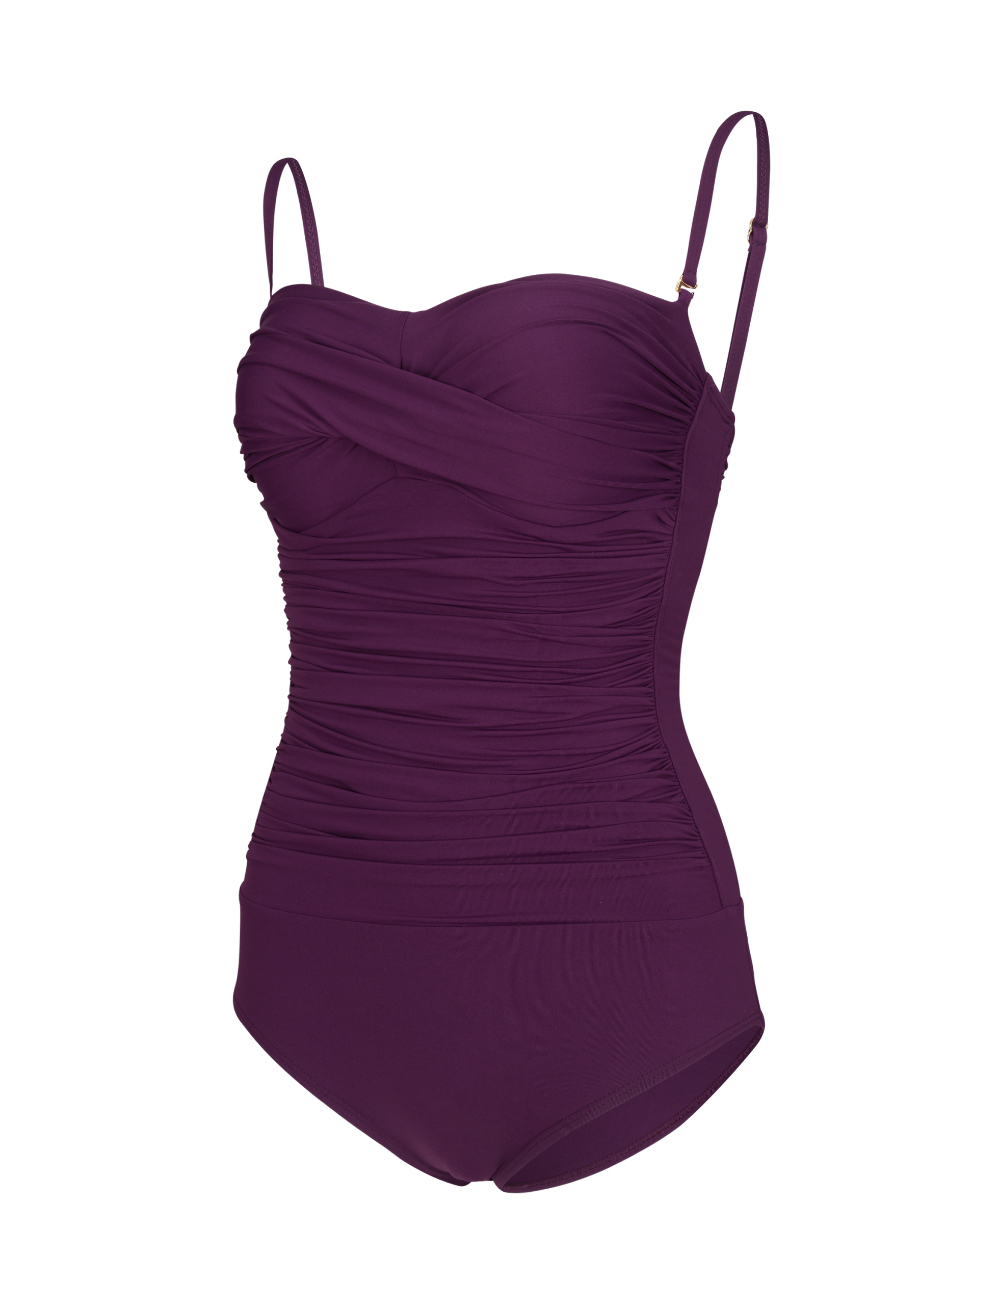 swim wear/inner wear purple color image-S1L45